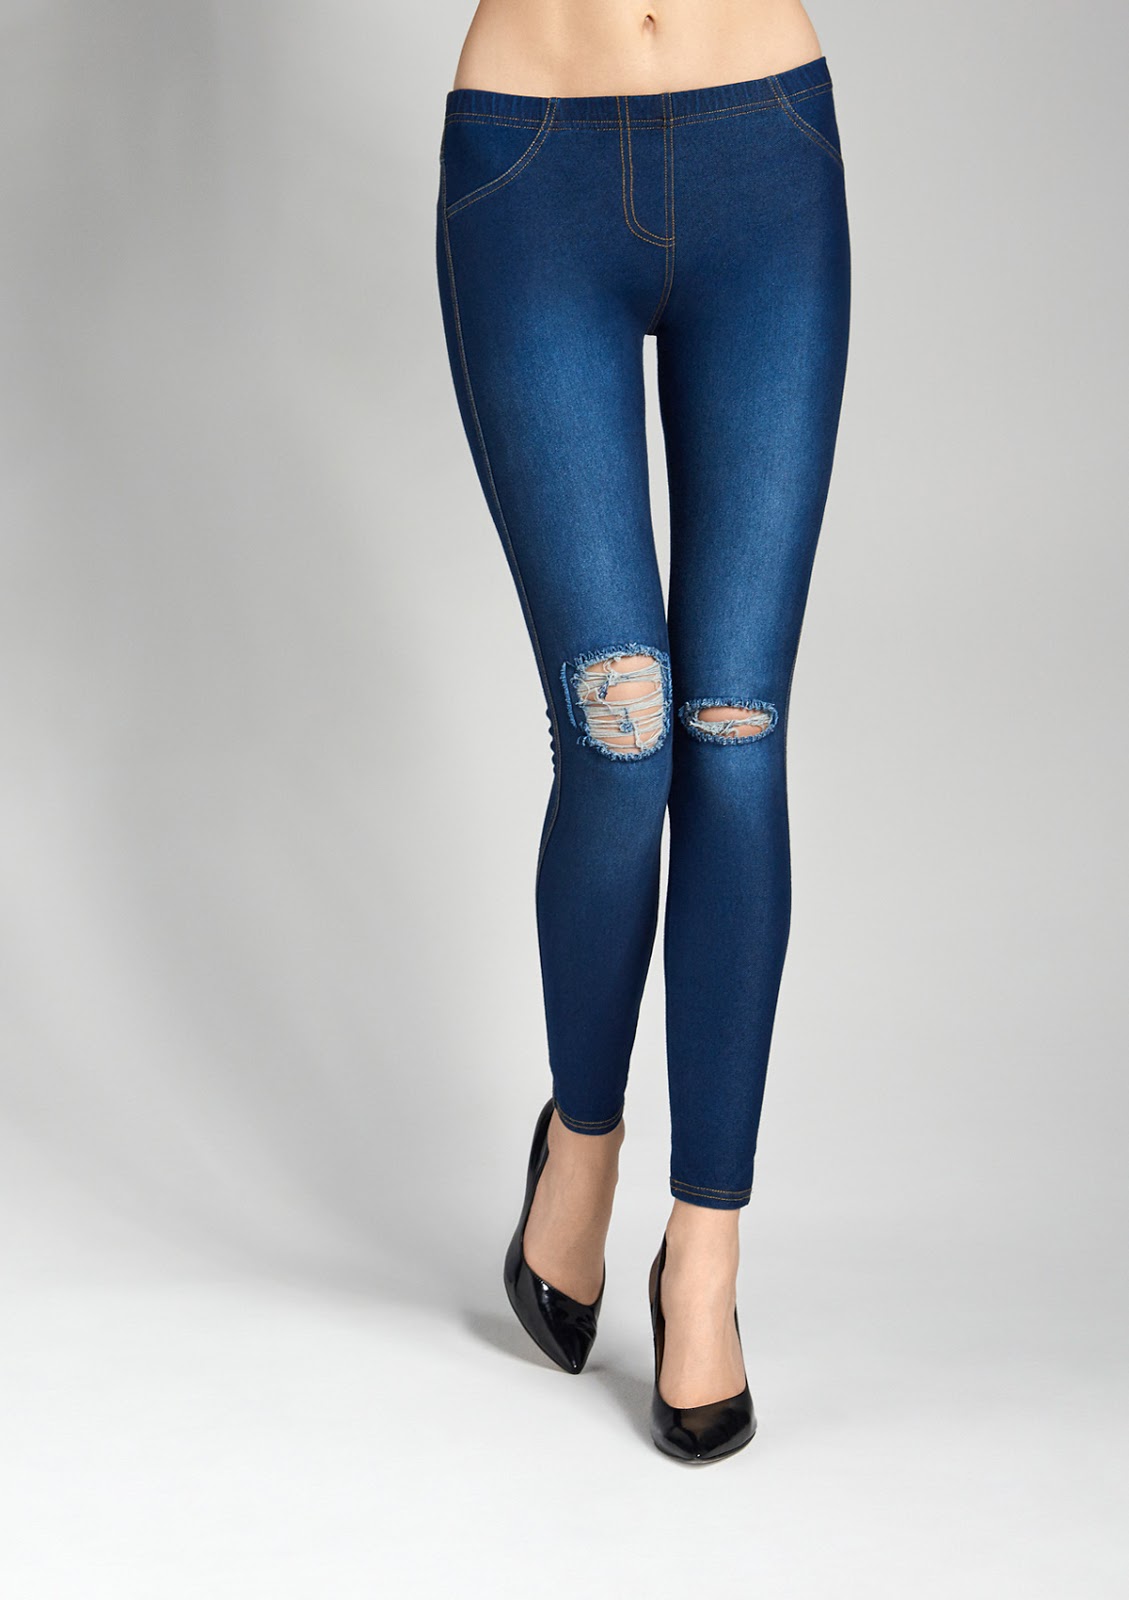 Коллекция Marilyn (Мэрилин) Осень-Зима 2016-2017. Jeans Rip - модные зимние джеггинсы с разорванными коленями.